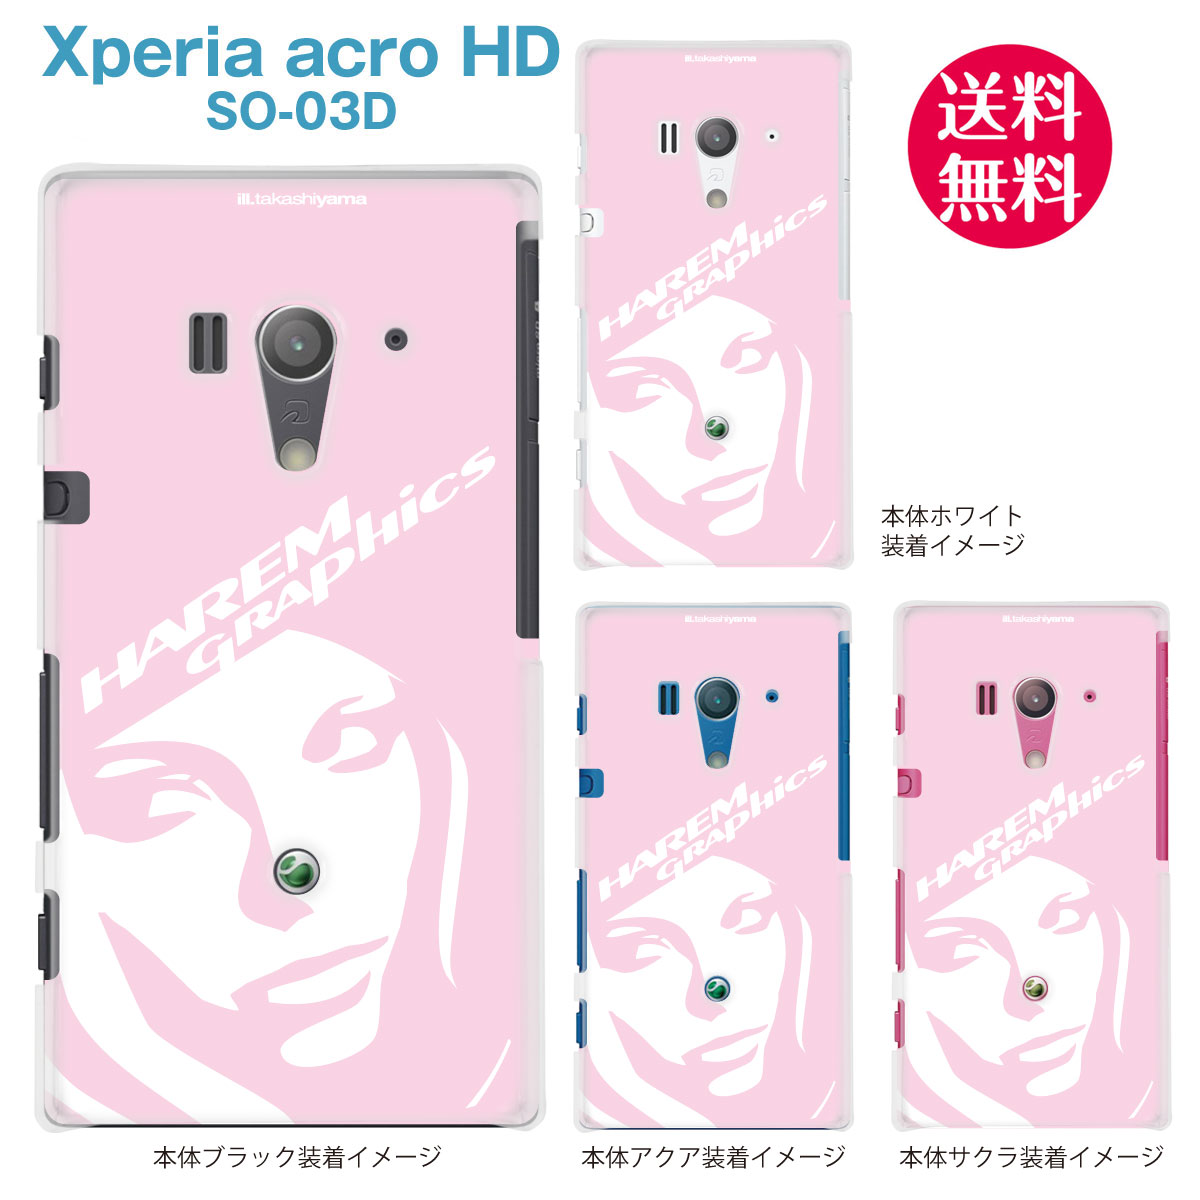 【HAREM GRAPHICS】【Xperia acro HD SO-03D】【docomo】【au】【IS12S】【ケース】【カバー】【スマホケース】【クリアケース】　hgx-so03d-021e